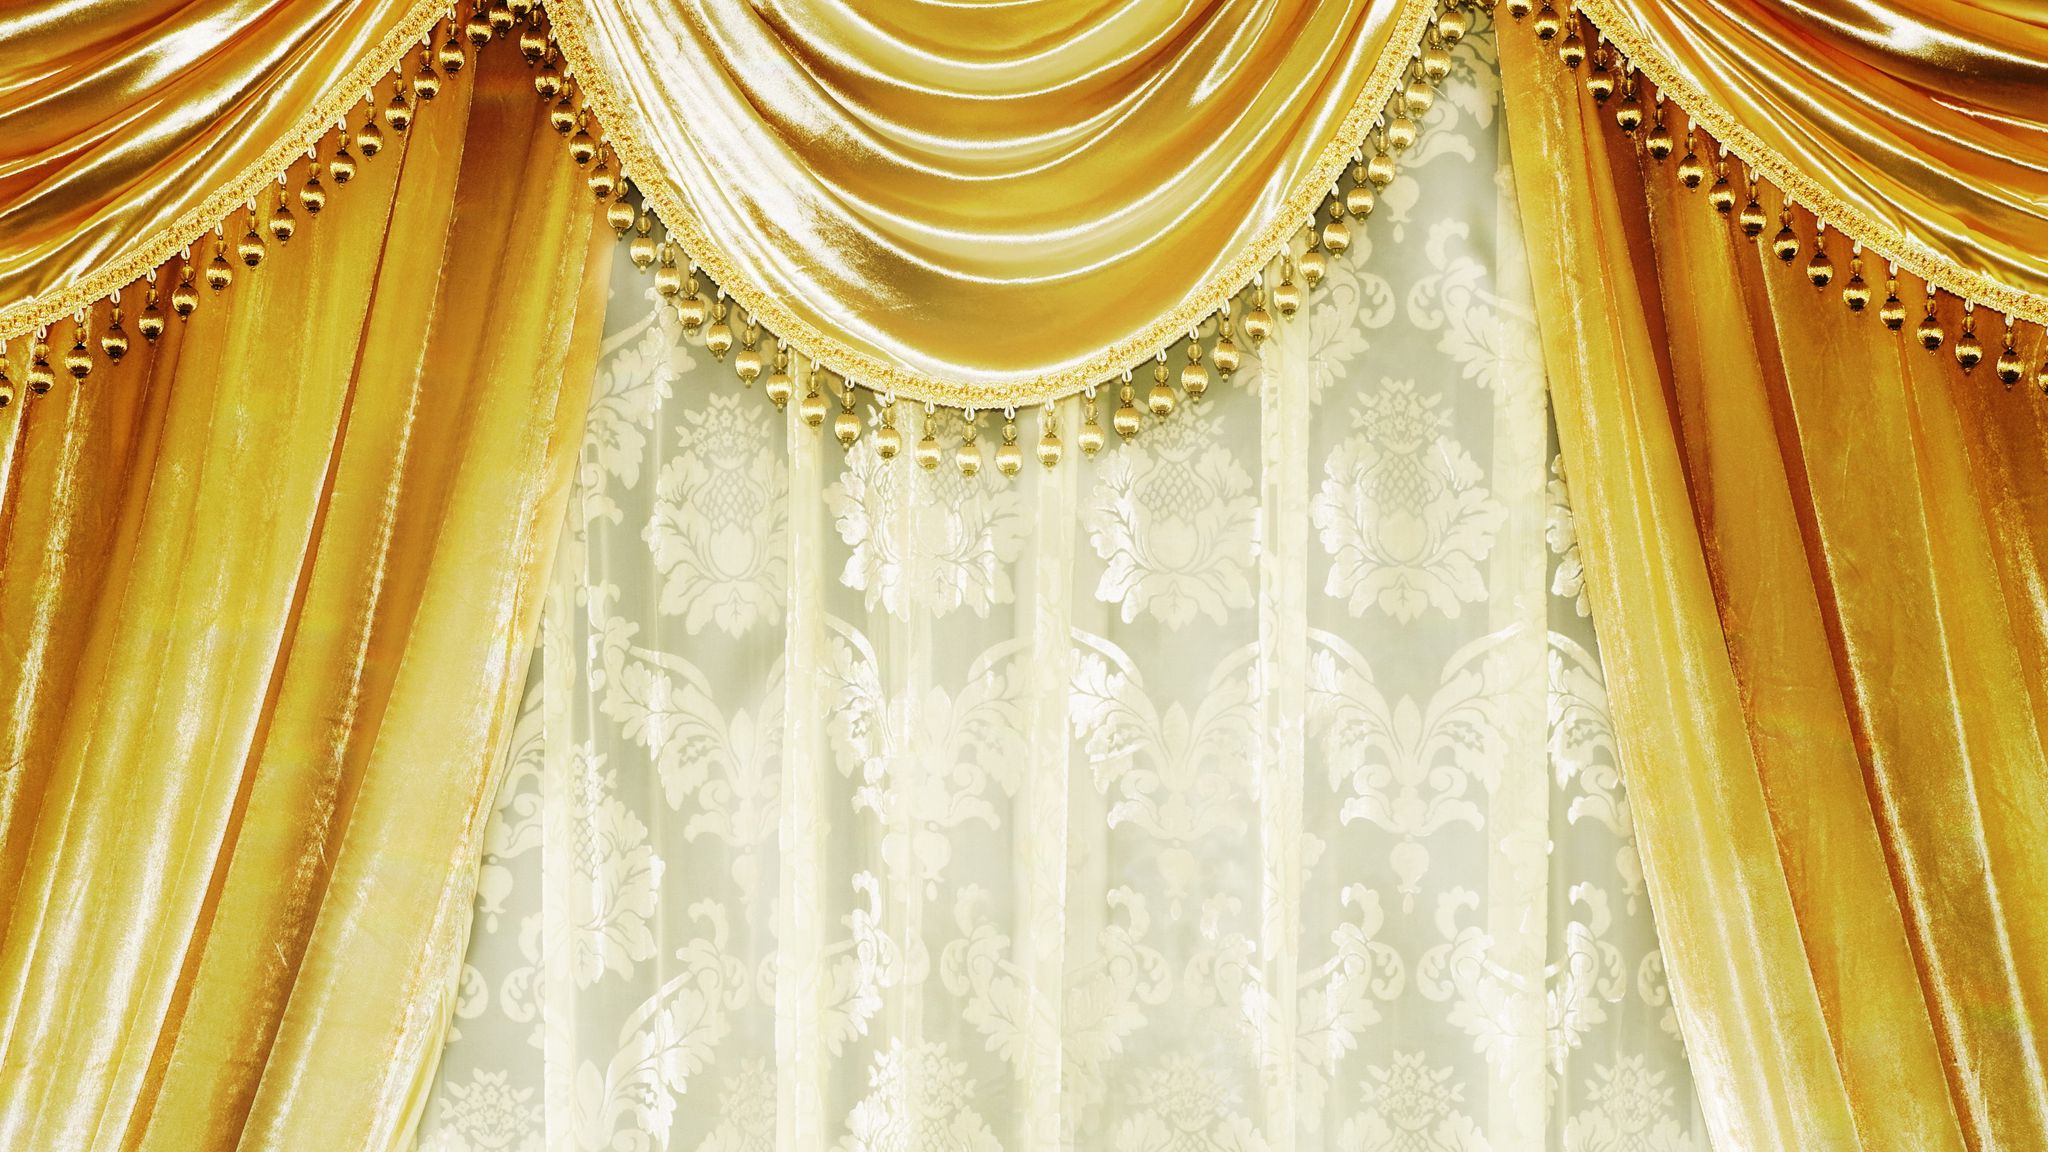 Với những chiếc Rèm vàng sang trọng được thiết kế độc đáo, đem lại cho không gian sống của bạn một vẻ đẹp và quý phái không tưởng. Hãy cùng chiêm ngưỡng và tận hưởng những khoảnh khắc đáng nhớ này.